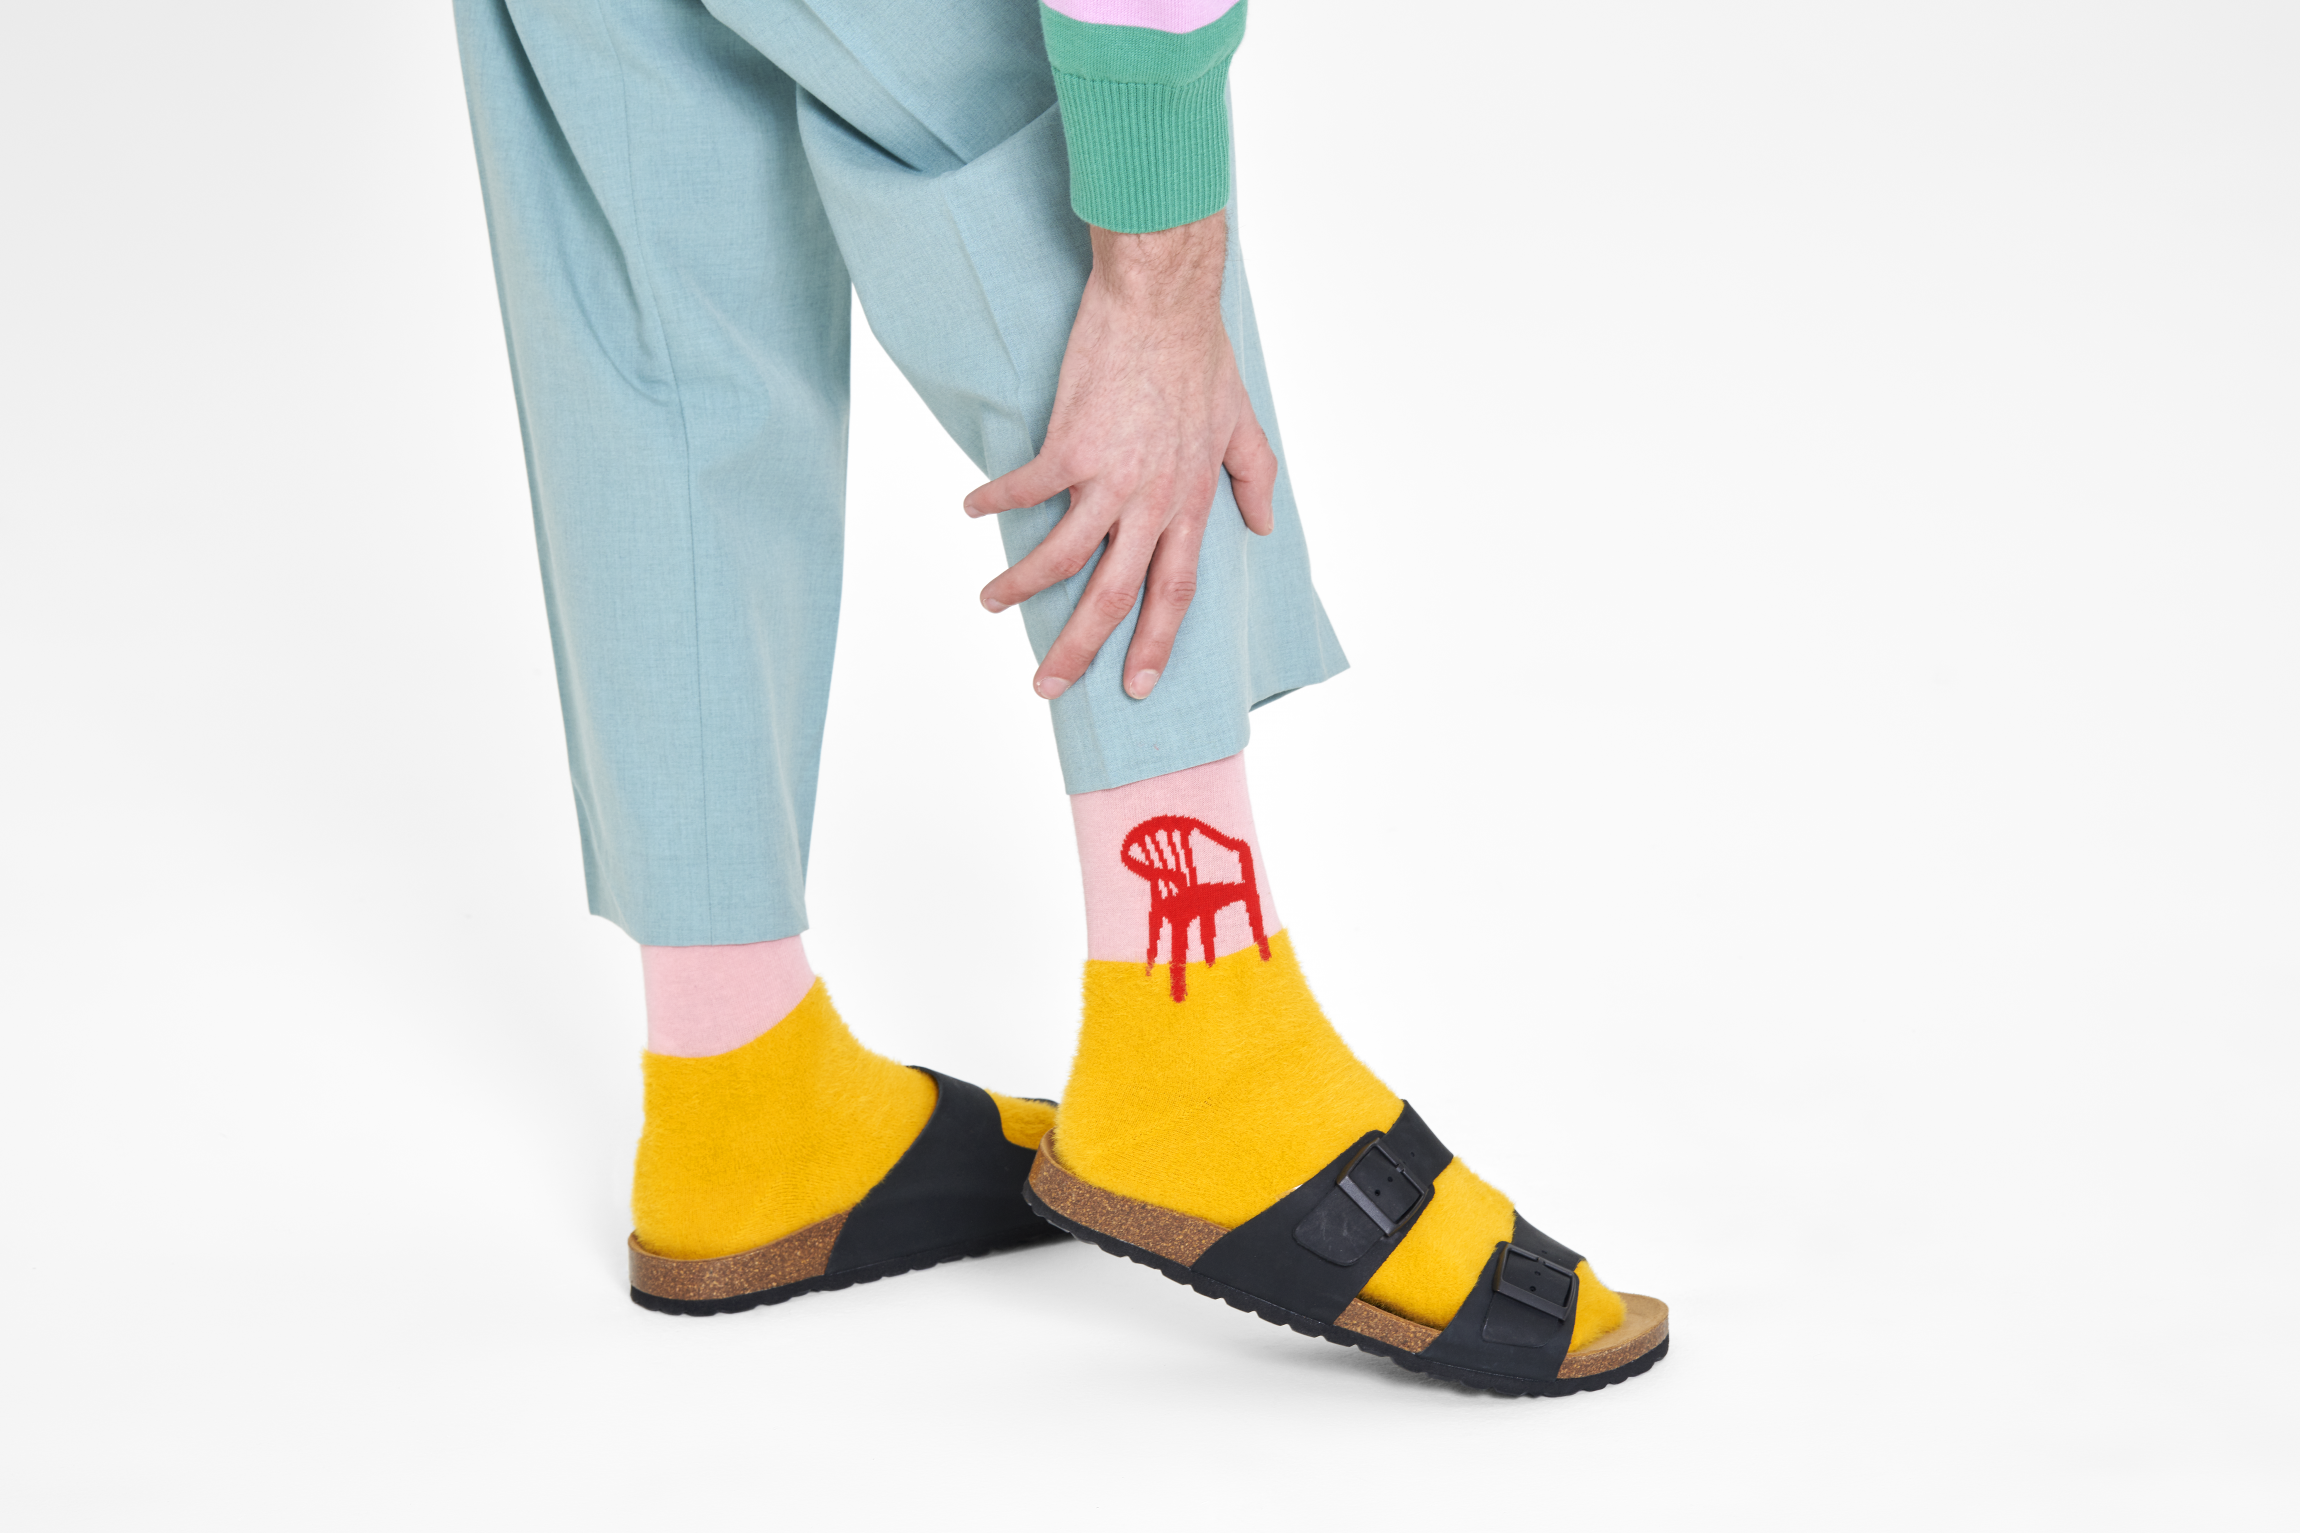 Růžovo-žluté ponožky Happy Socks s židlí, vzor Sunday Funday